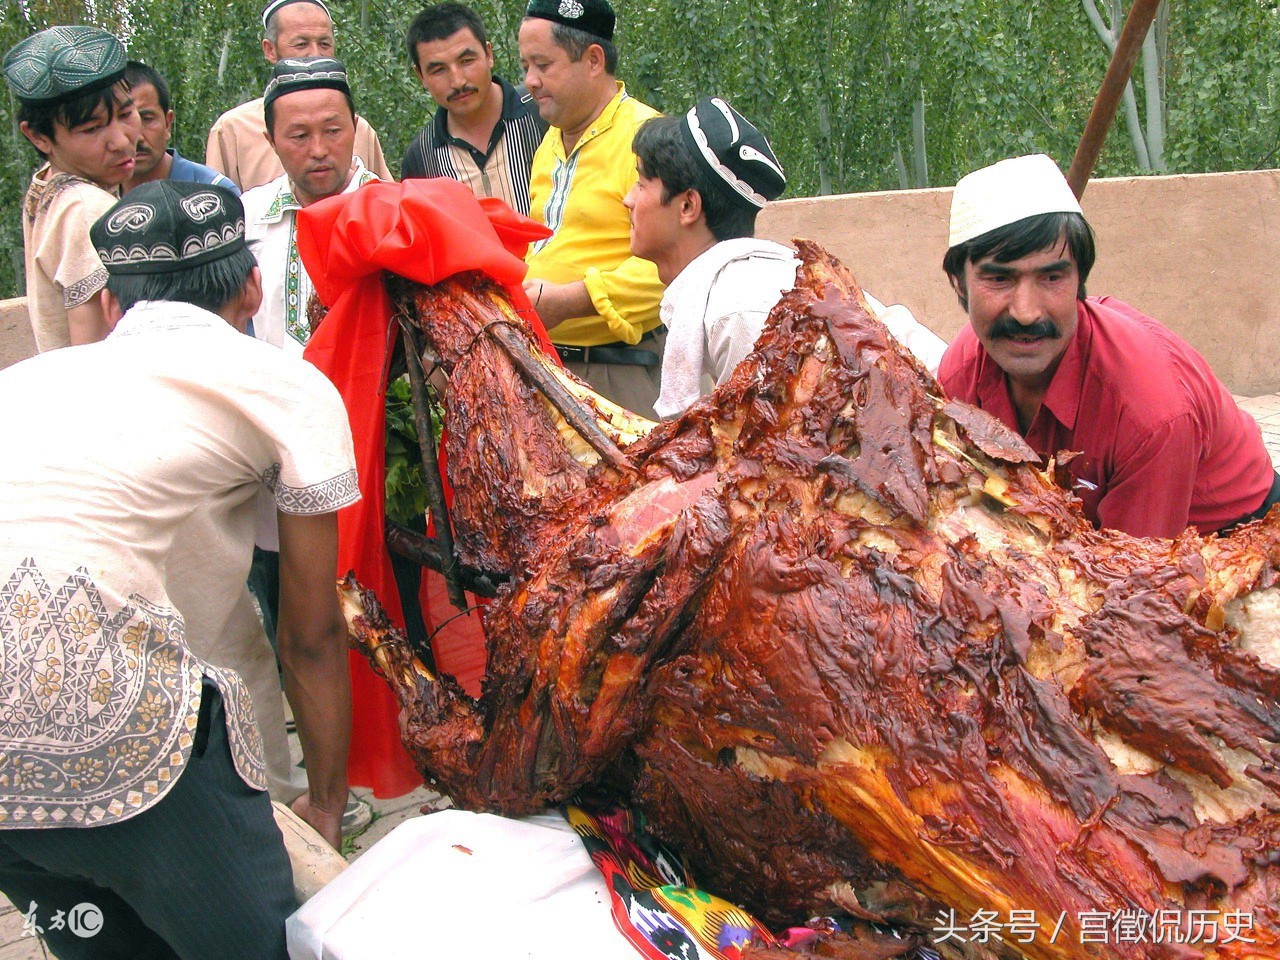 实拍:新疆名菜"骆驼烤,每公斤120元,1小时就被抢光了!